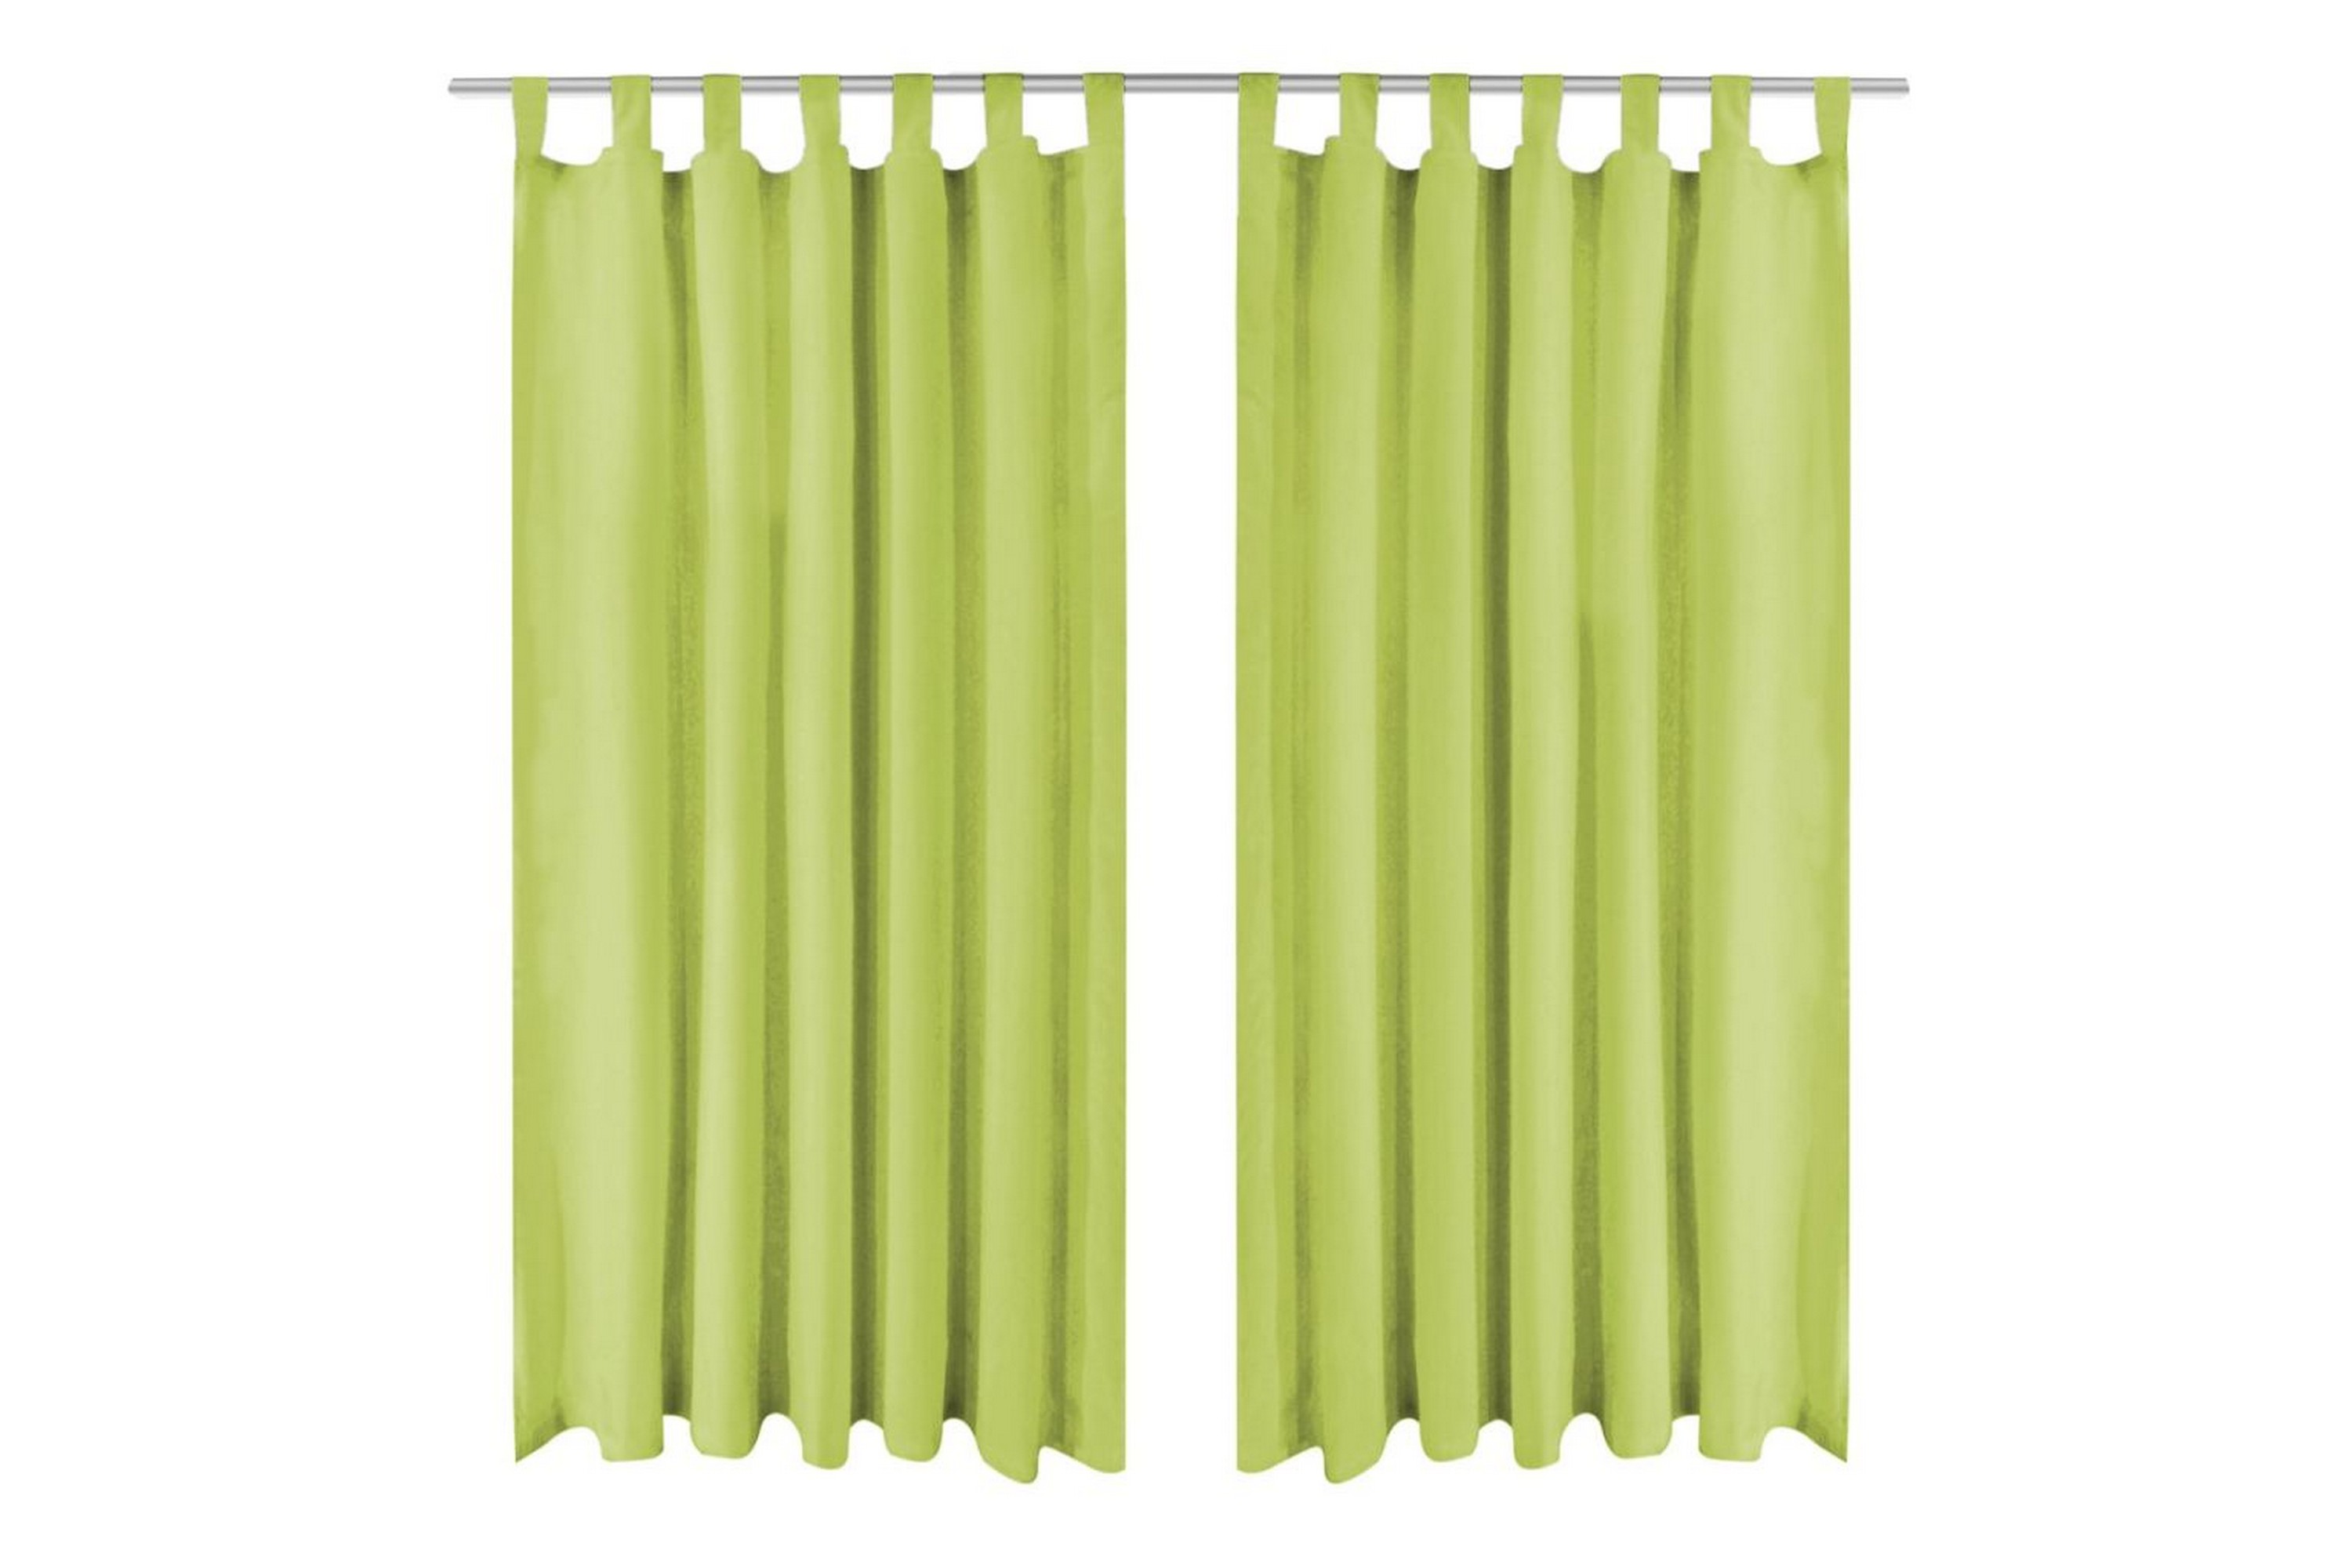 Be Basic Mikrosateng gardiner med hemper 2 stk 140x225 cm grønn - Grønn